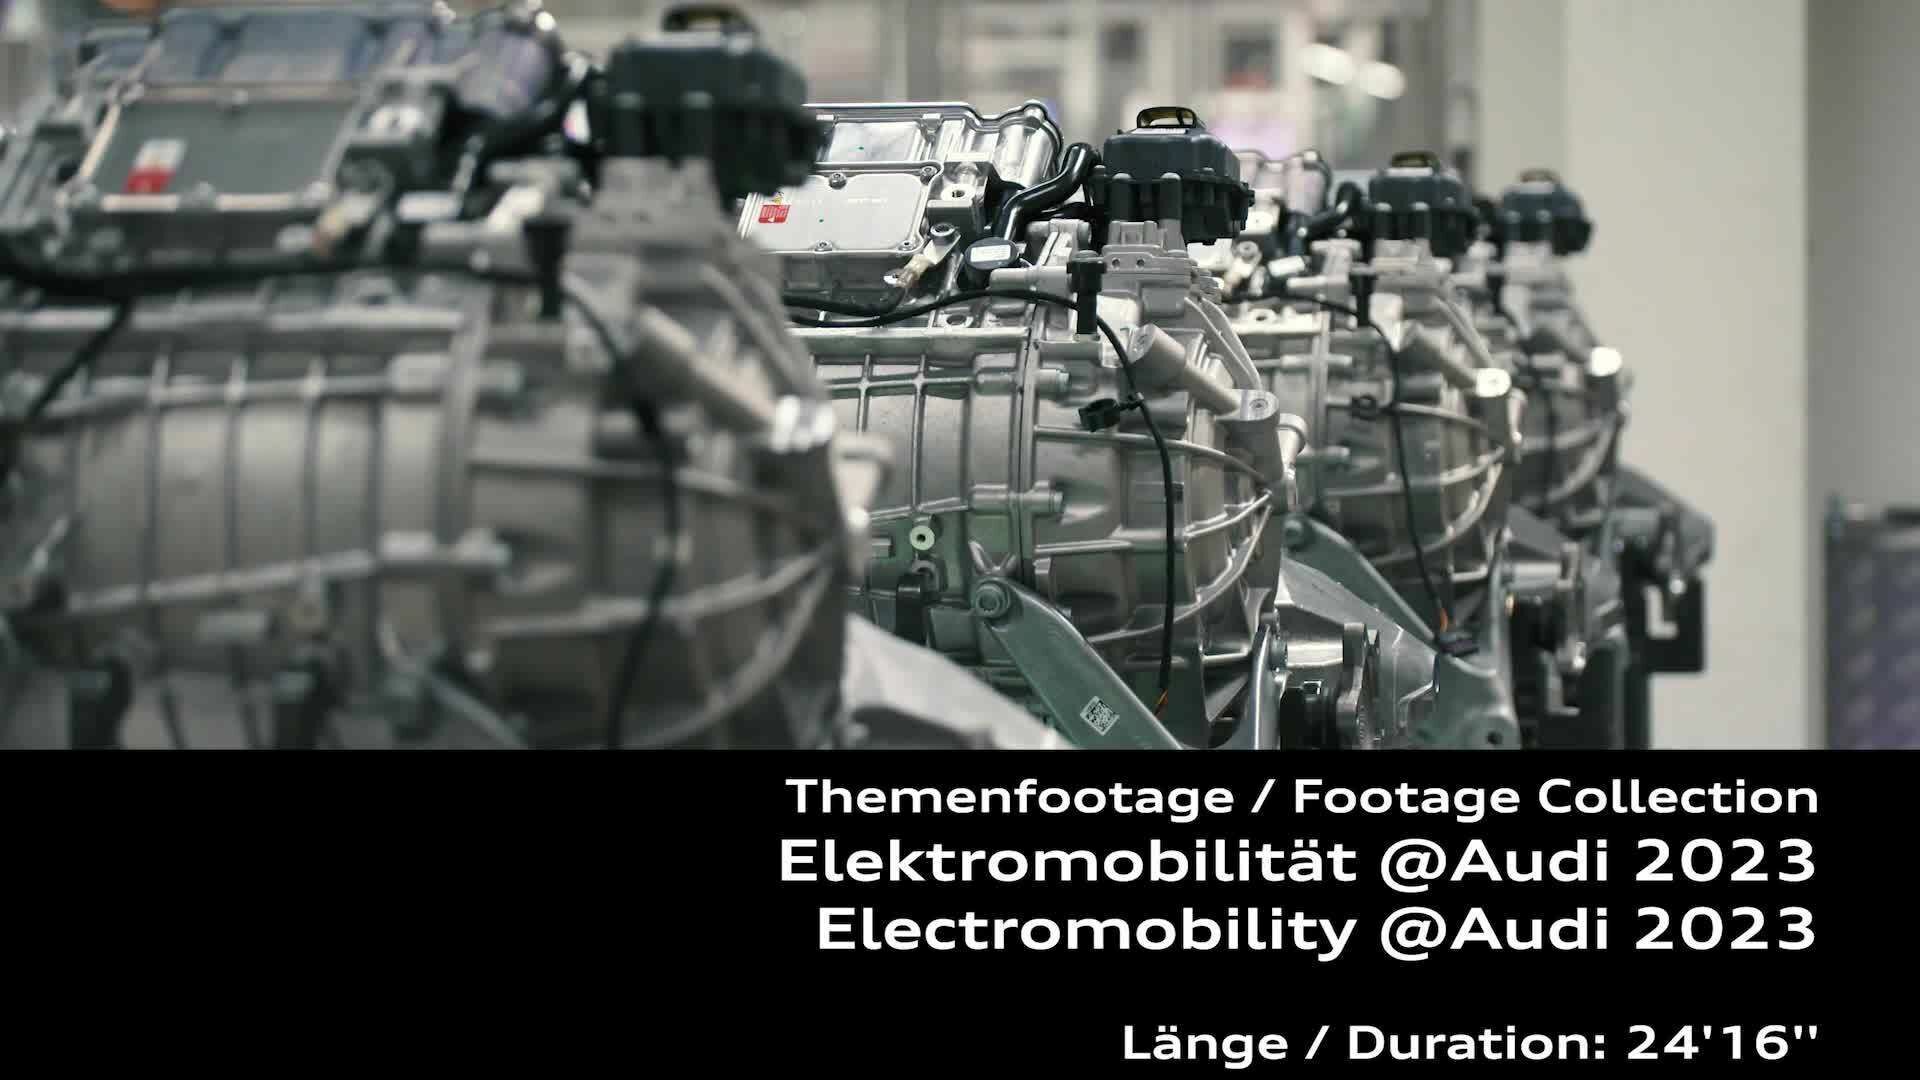 Footage: Elektromobilität @Audi 2023